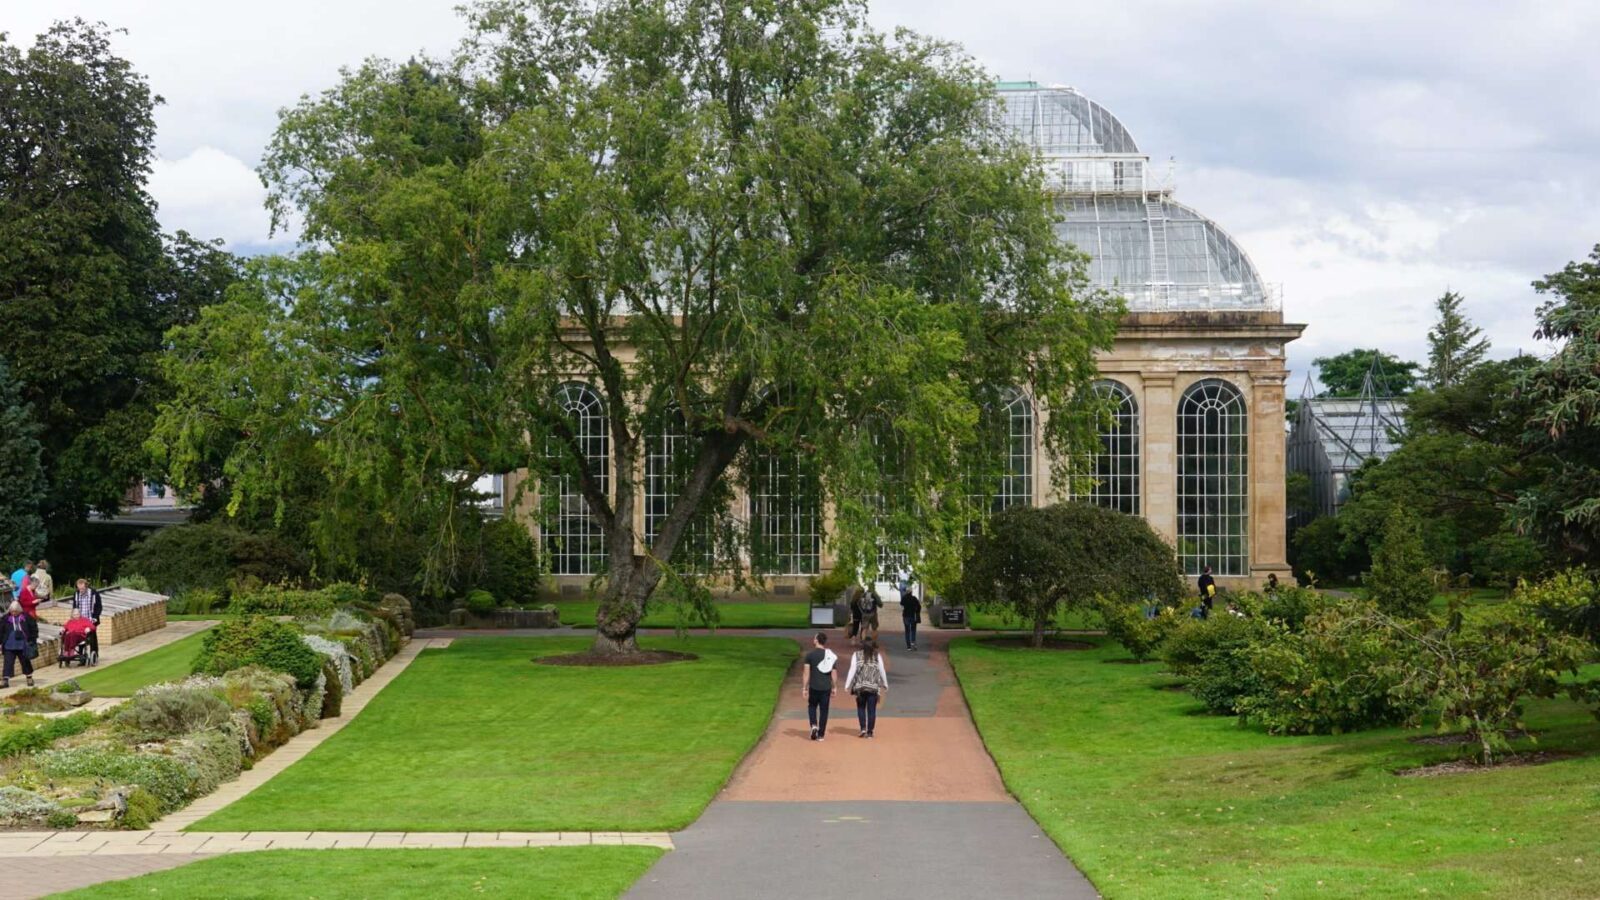 Royal Botanic Garden in Edinburgh